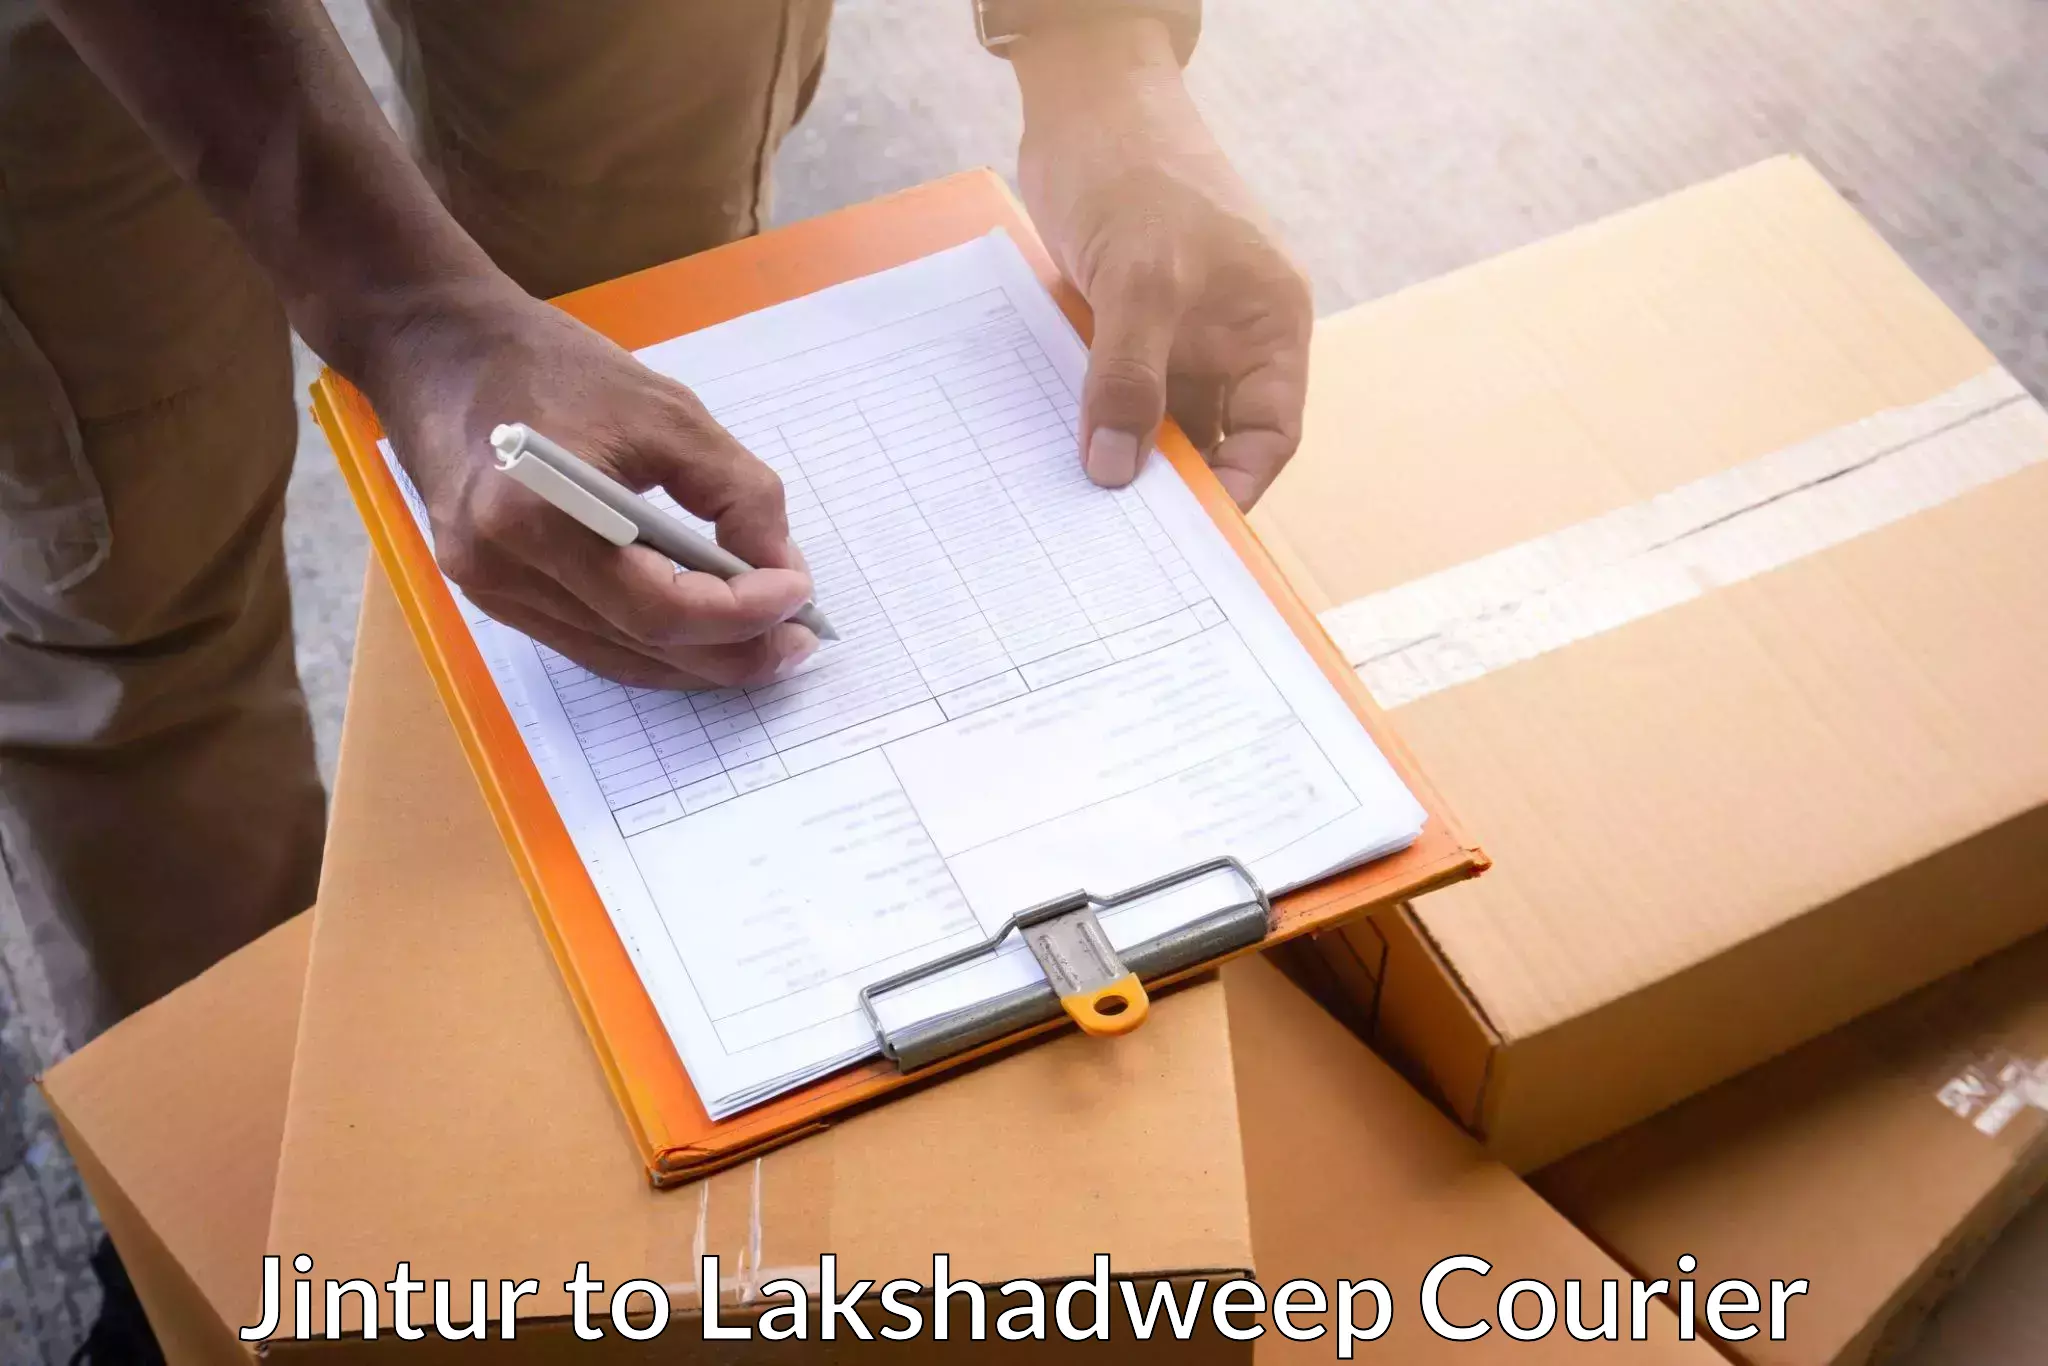 Package delivery network Jintur to Lakshadweep